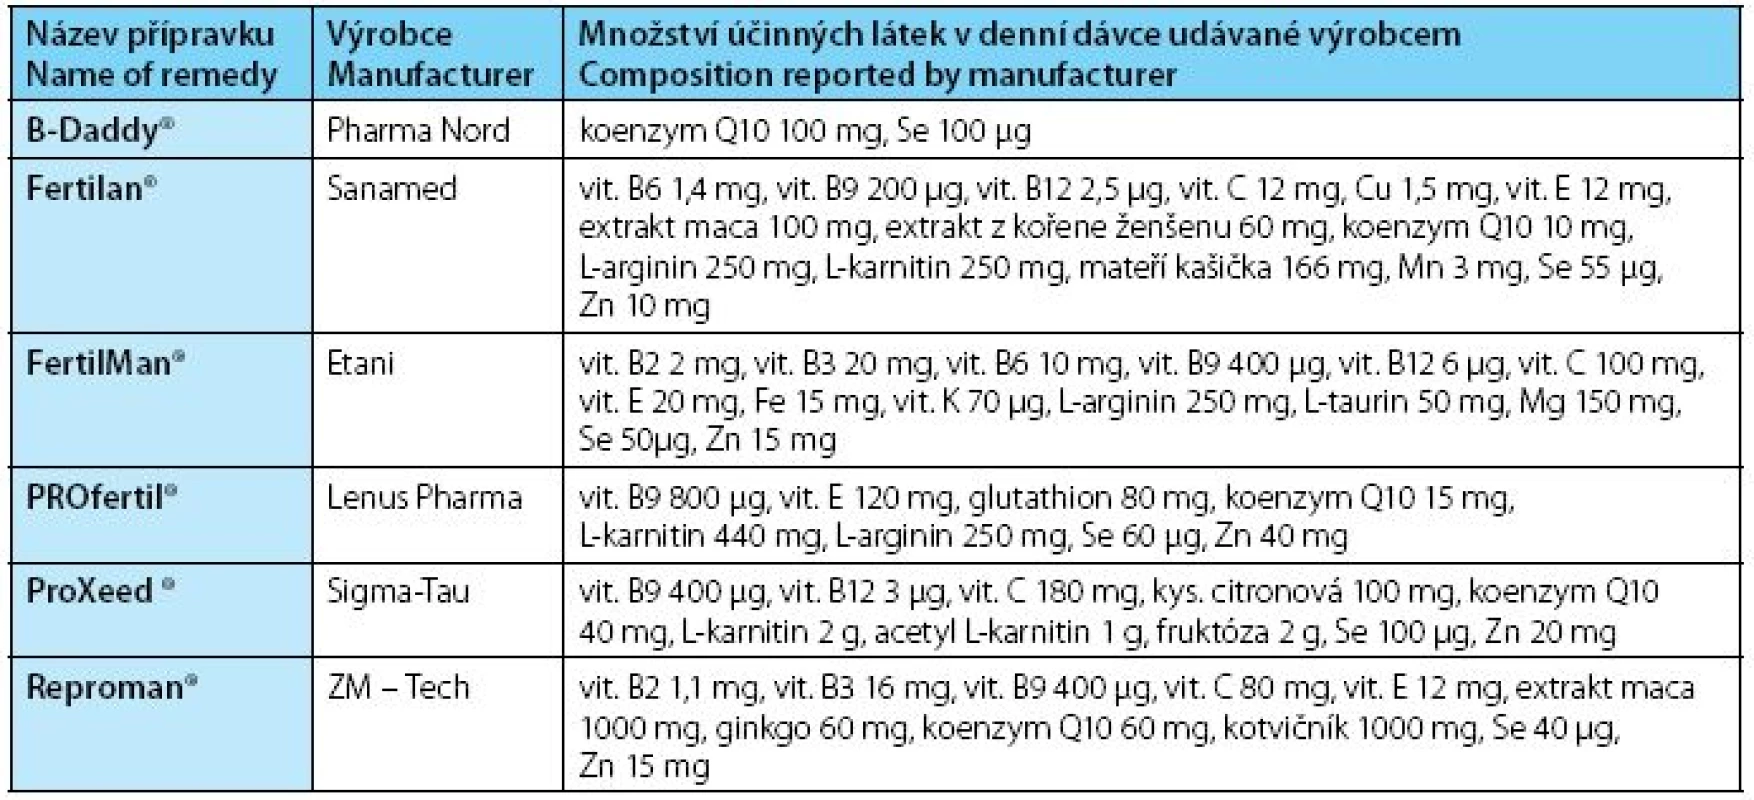 Název přípravku / Množství účinných látek v denní dávce udávané výrobcem
Table 2. Name of remedy / Composition reported by manufacturer